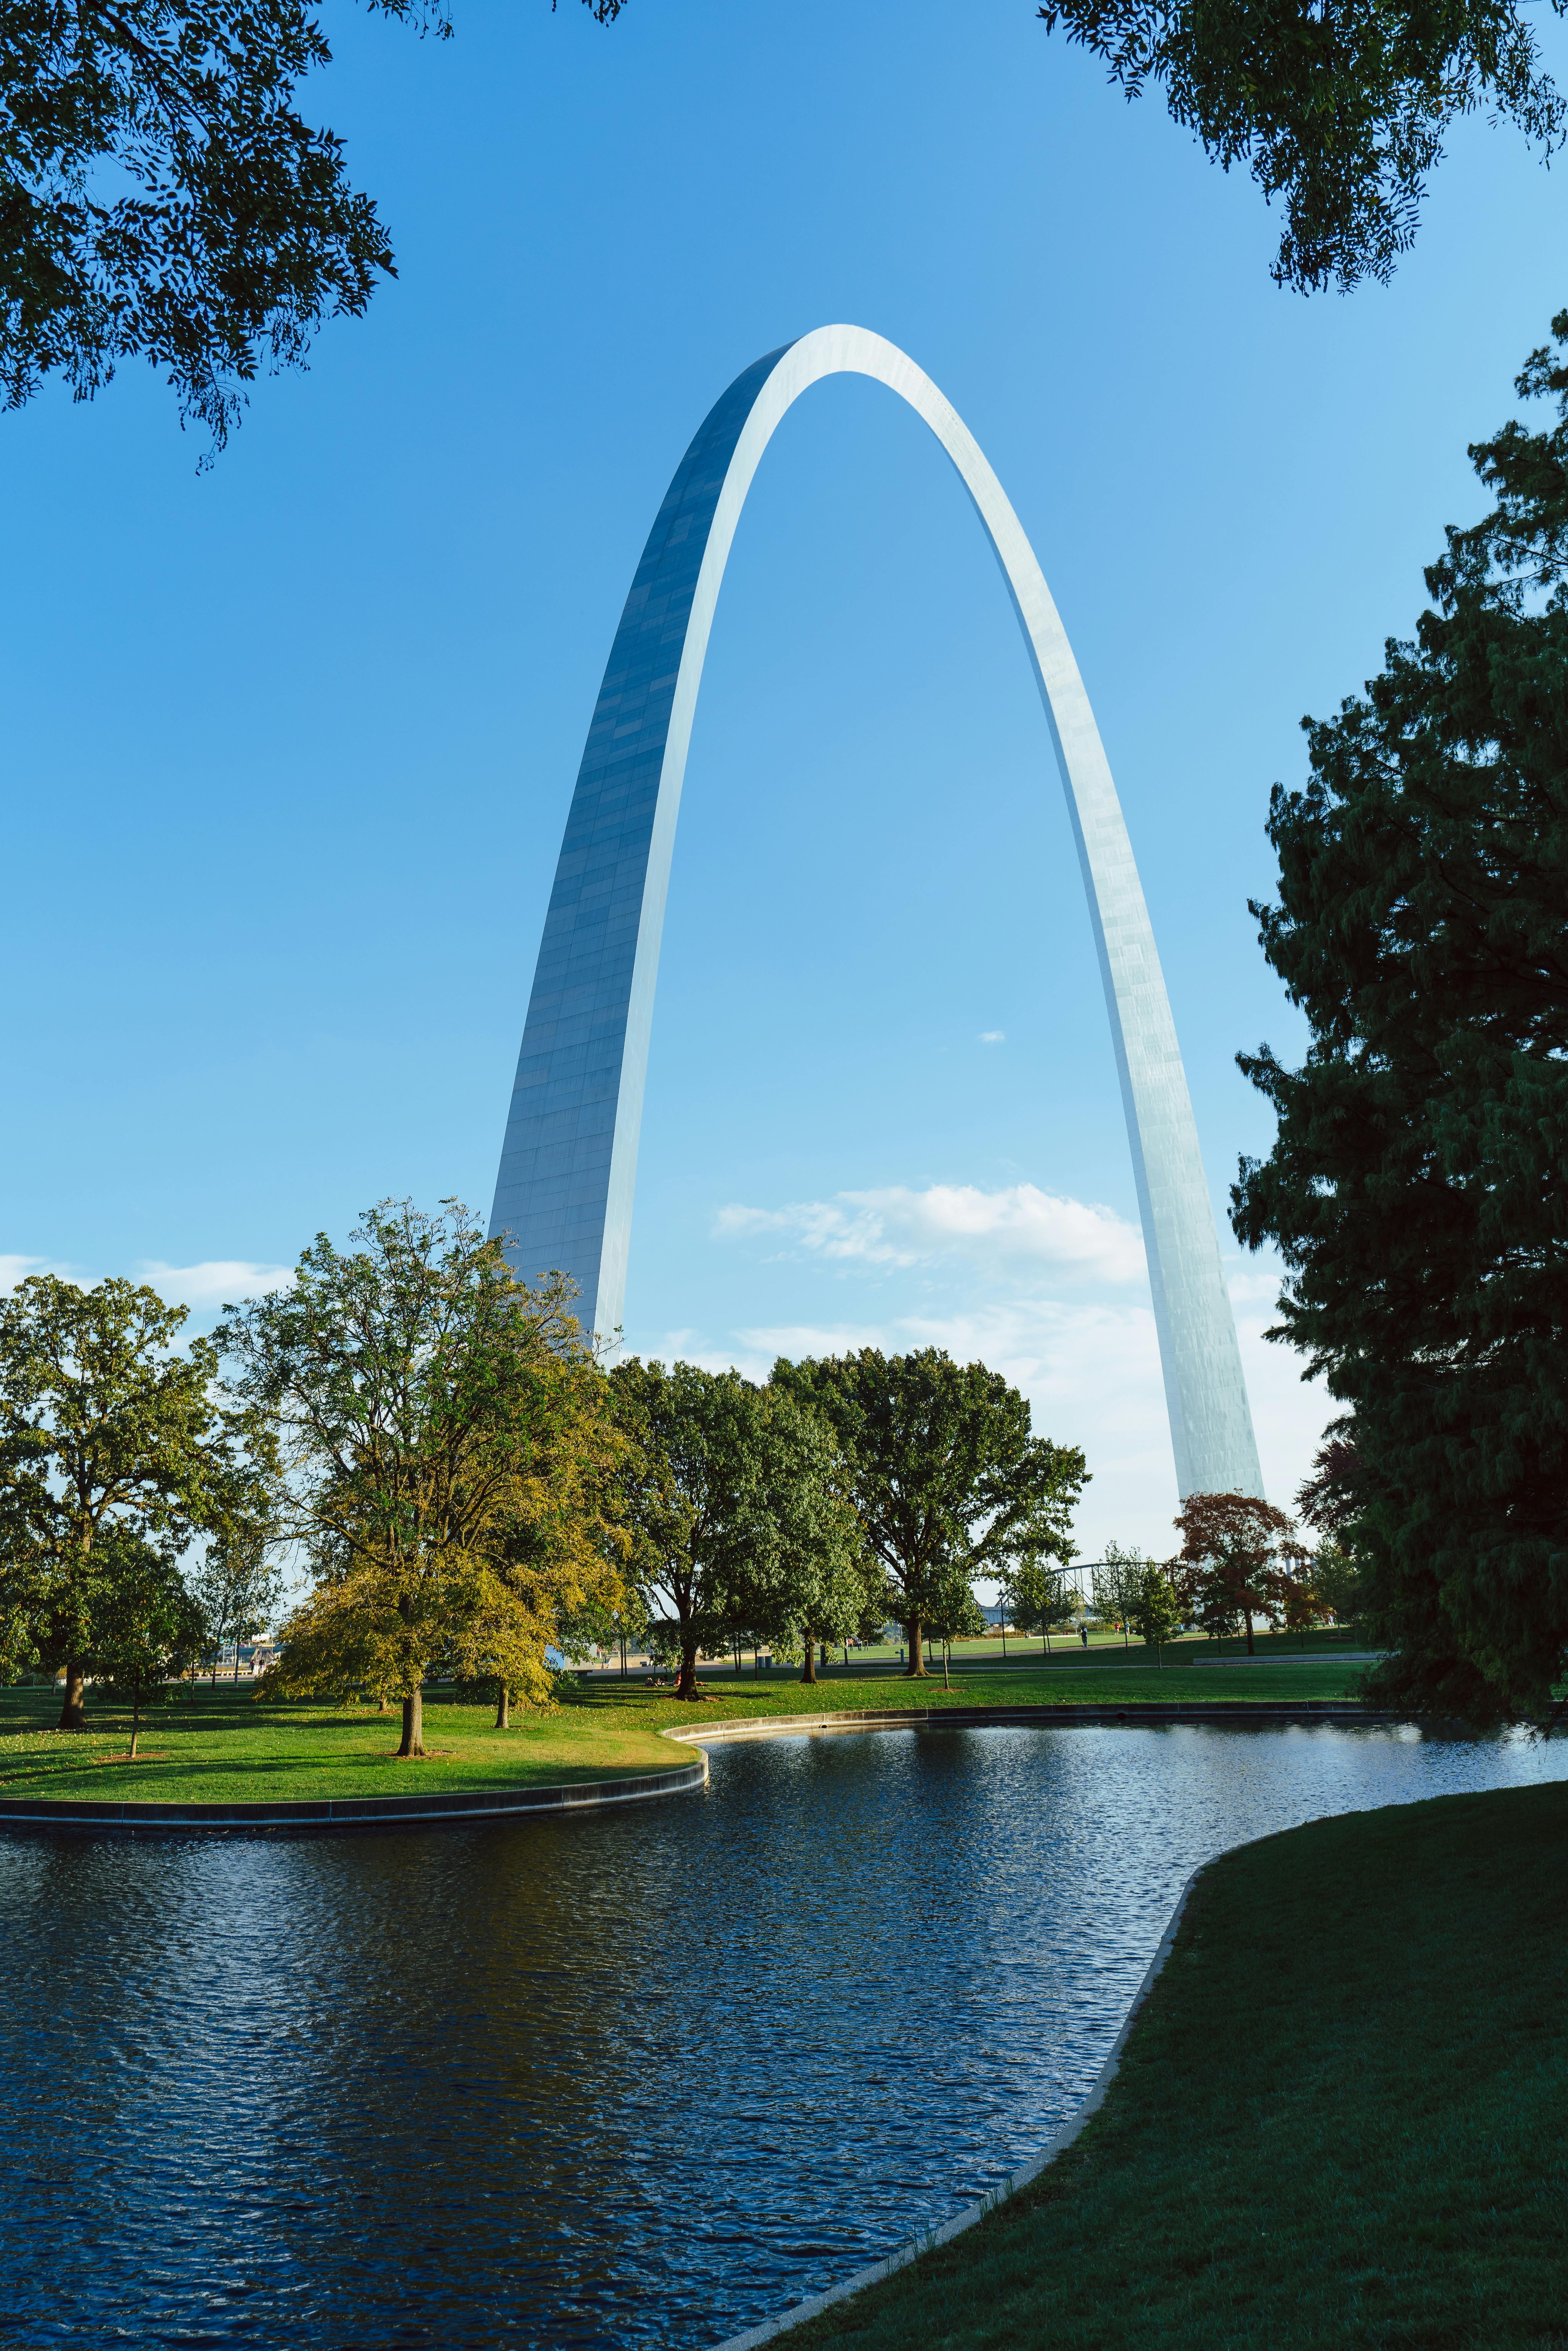 St. Louis image